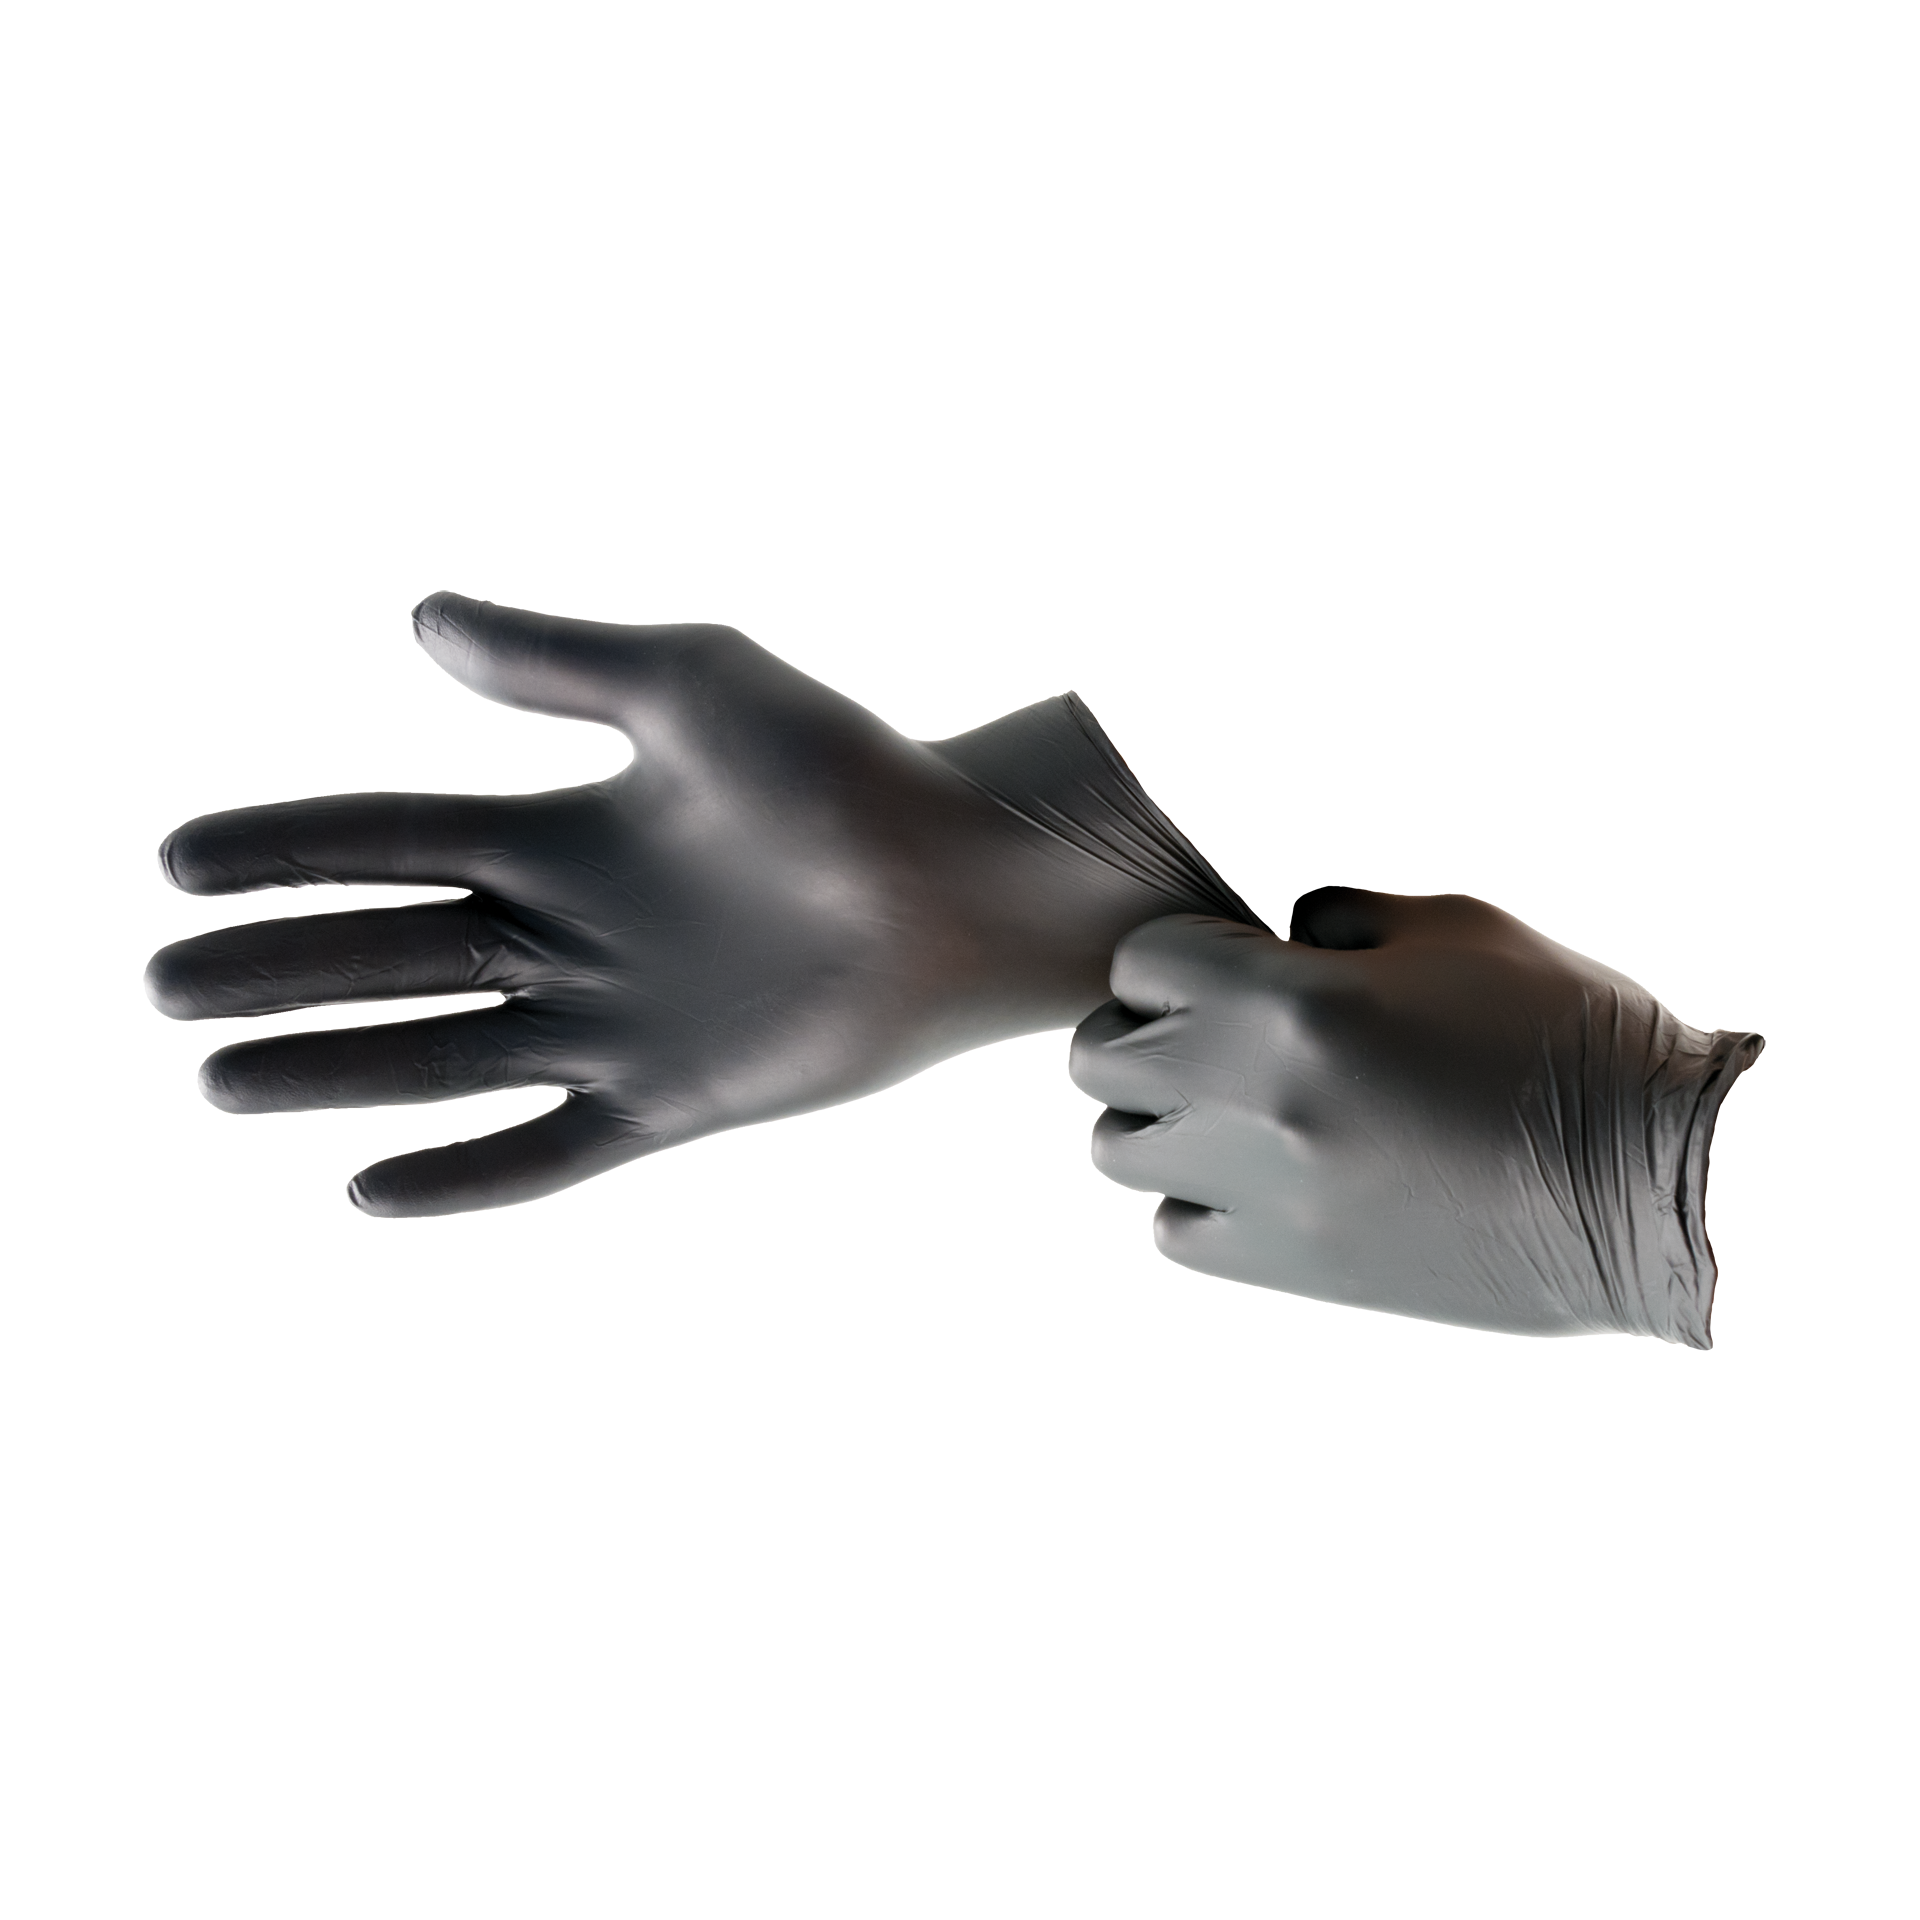 Handschuhe Nitril Größe M schwarz puder- und allergiefrei (100 Stk.)